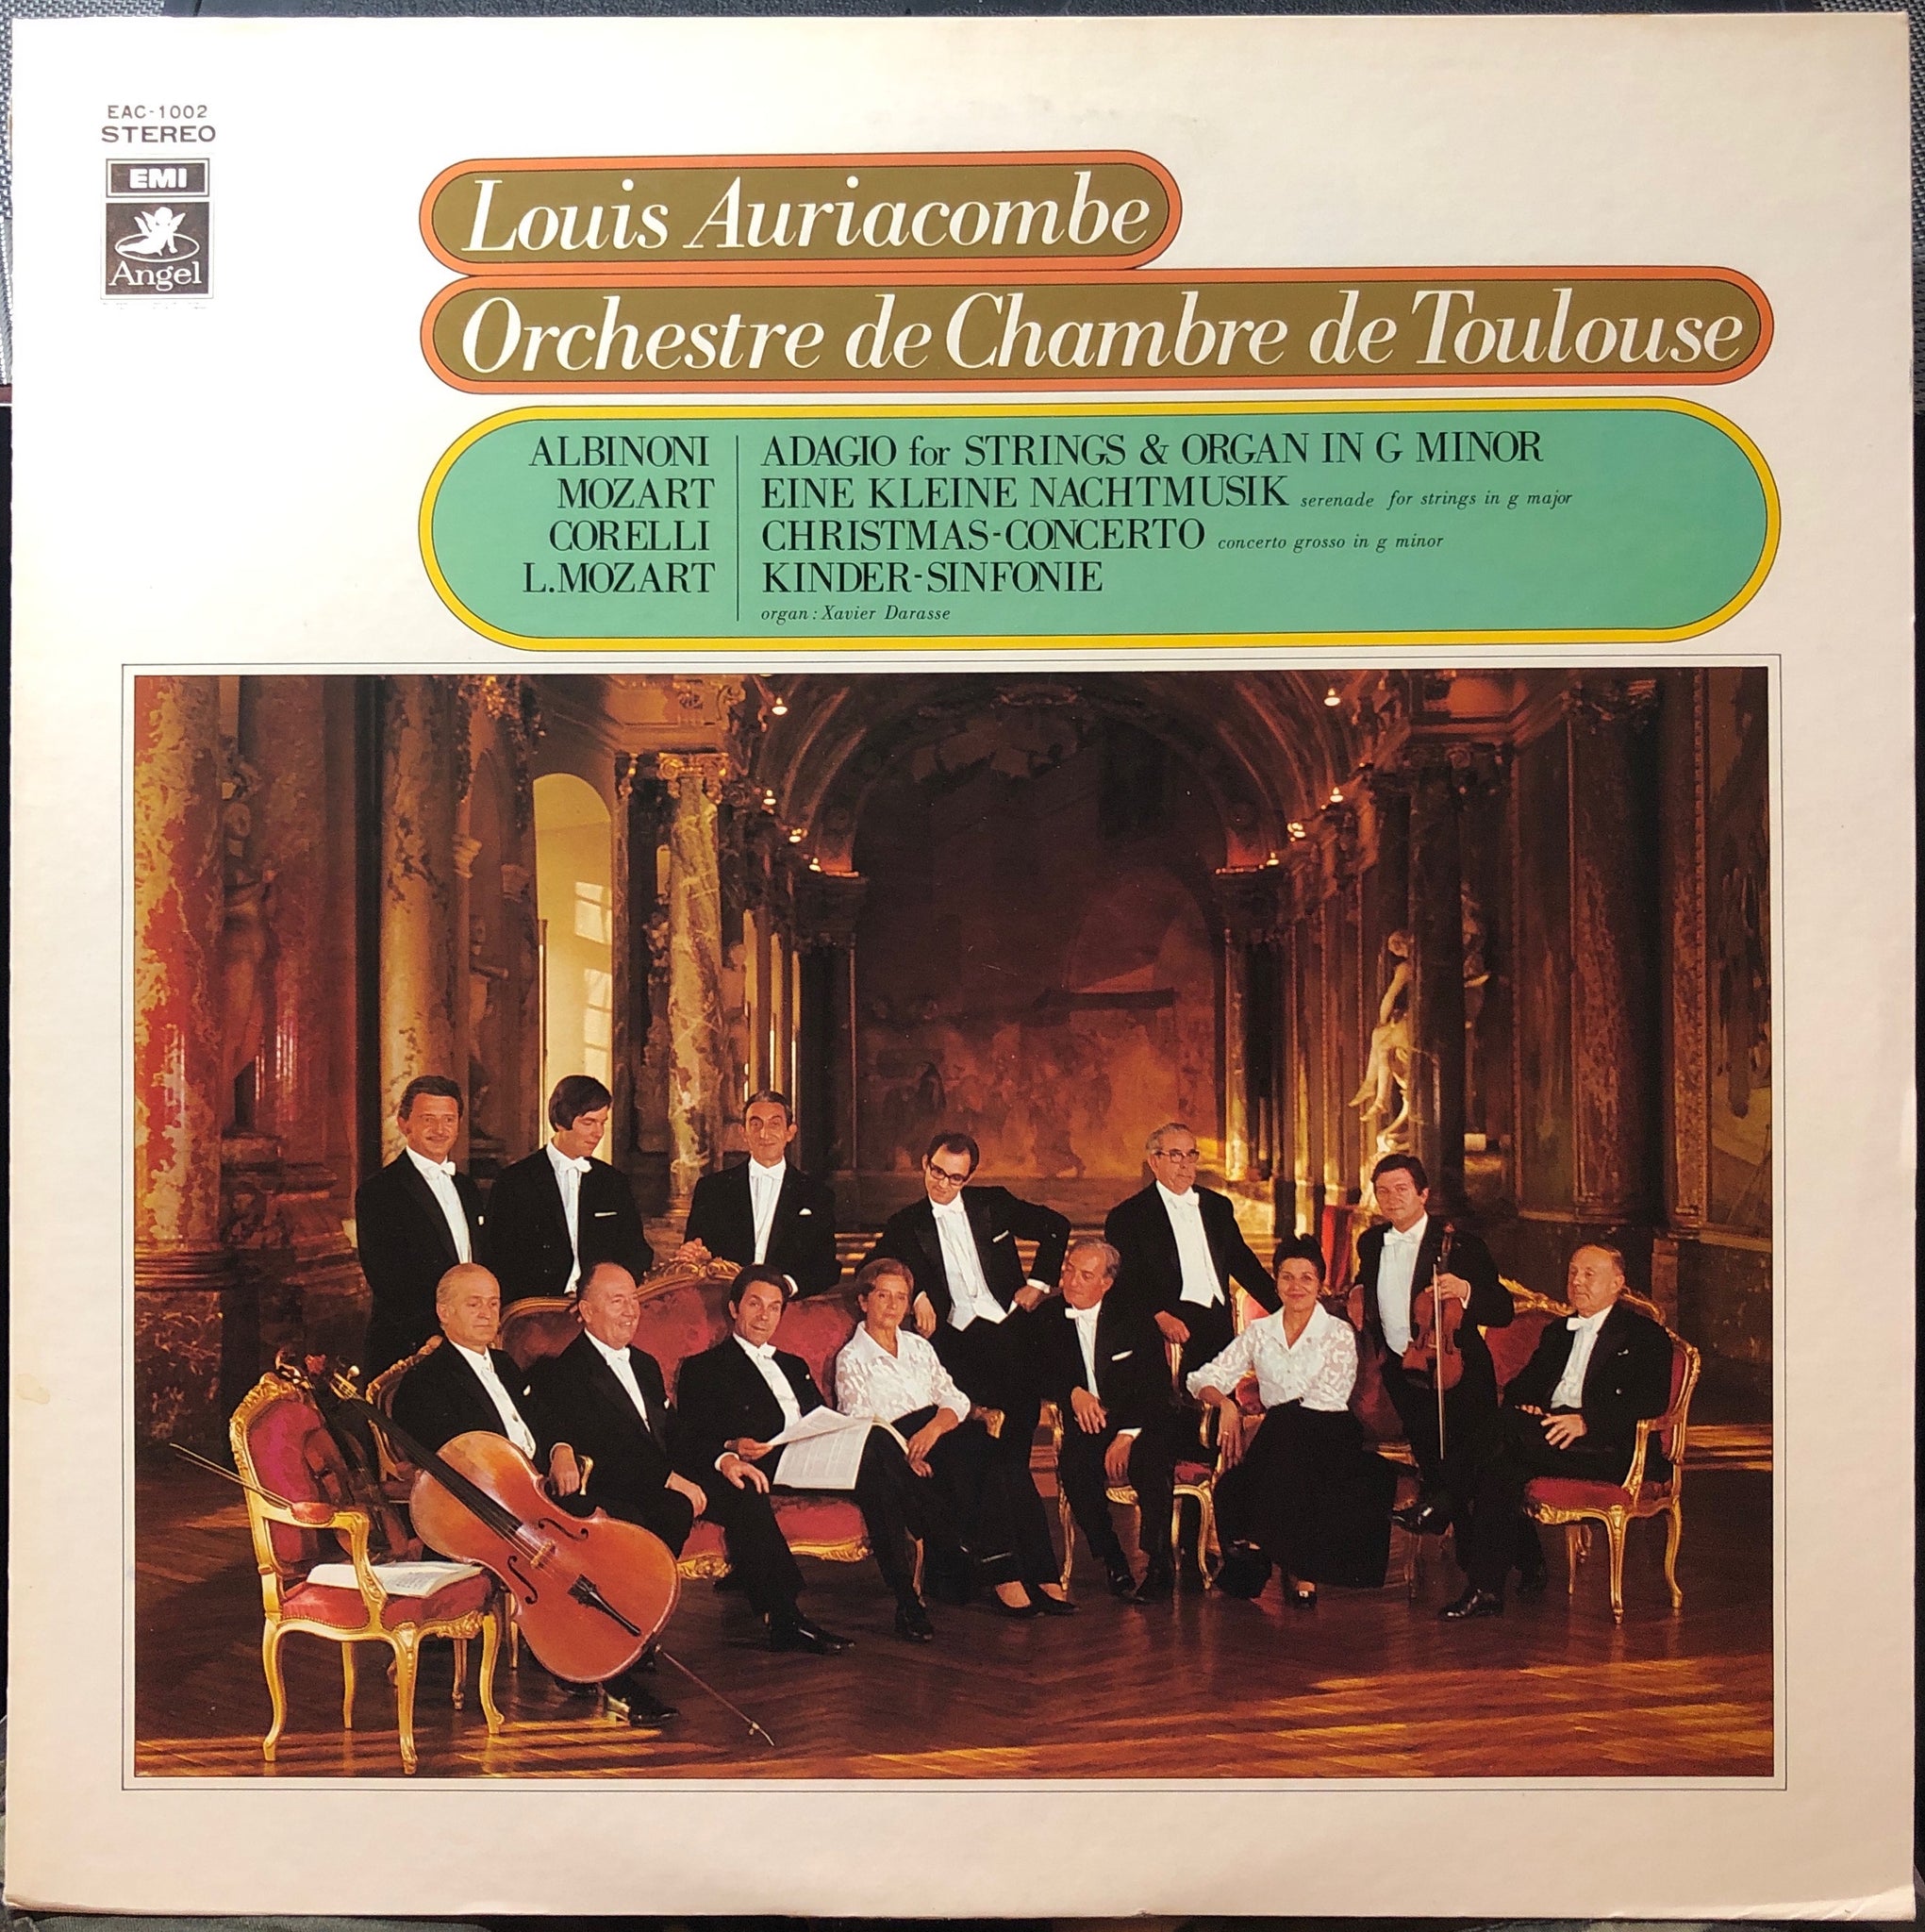 Louis Auriacombe, Orchestre De Chambre De Toulouse ‎– Albinoni, Corelli, Mozart - Mint- LP Record Angel EMI Japan Import Vinyl - Classical